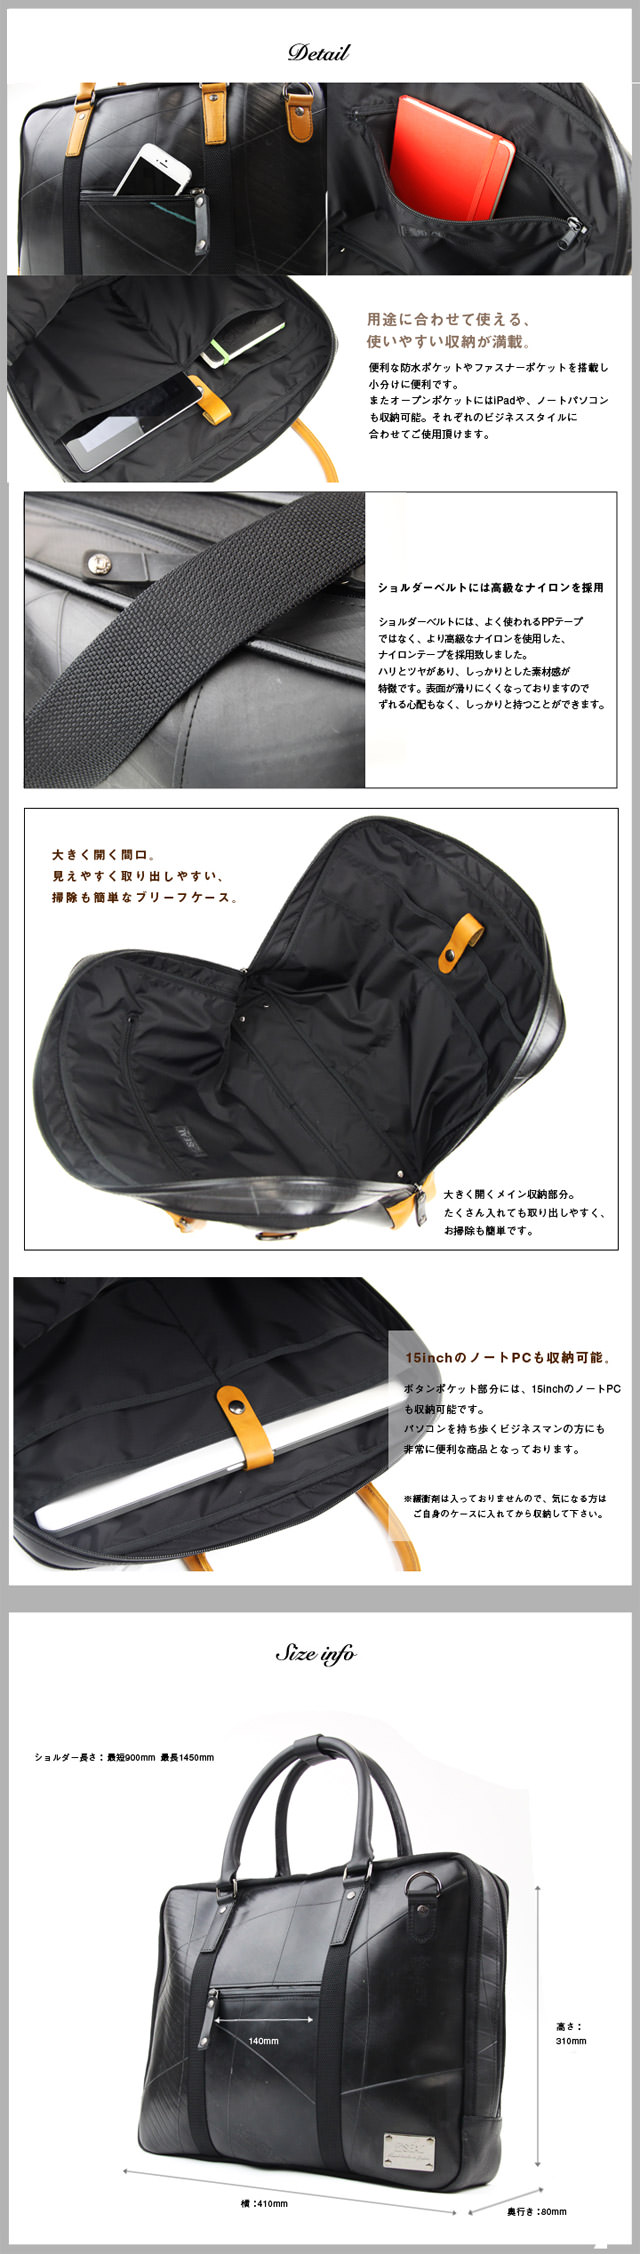 ブリーフケース waterproof | 日本職人が作るメンズ トート バッグ